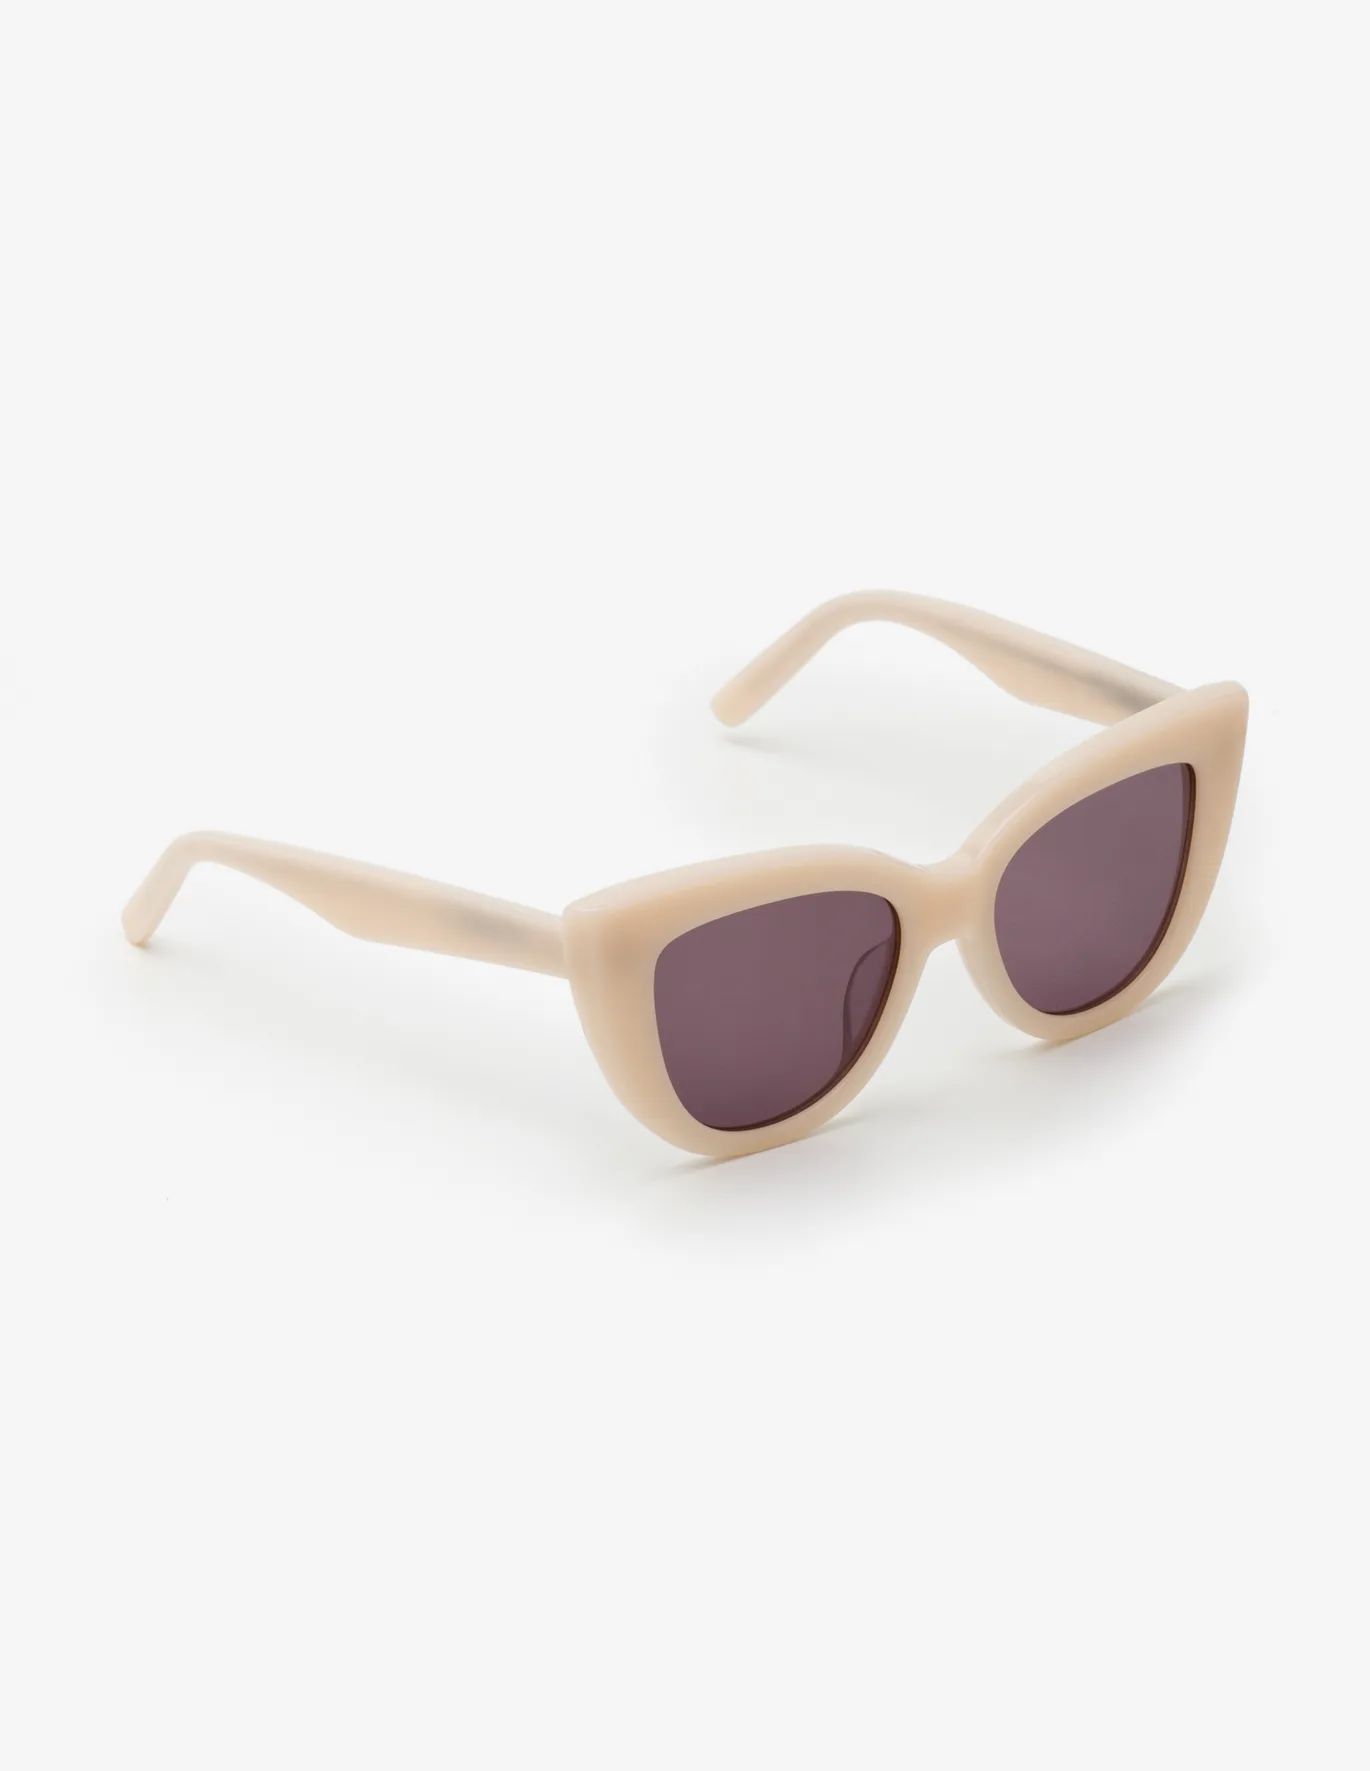 Valencia Sunglasses - Poinsettia | Boden US | Boden (US)